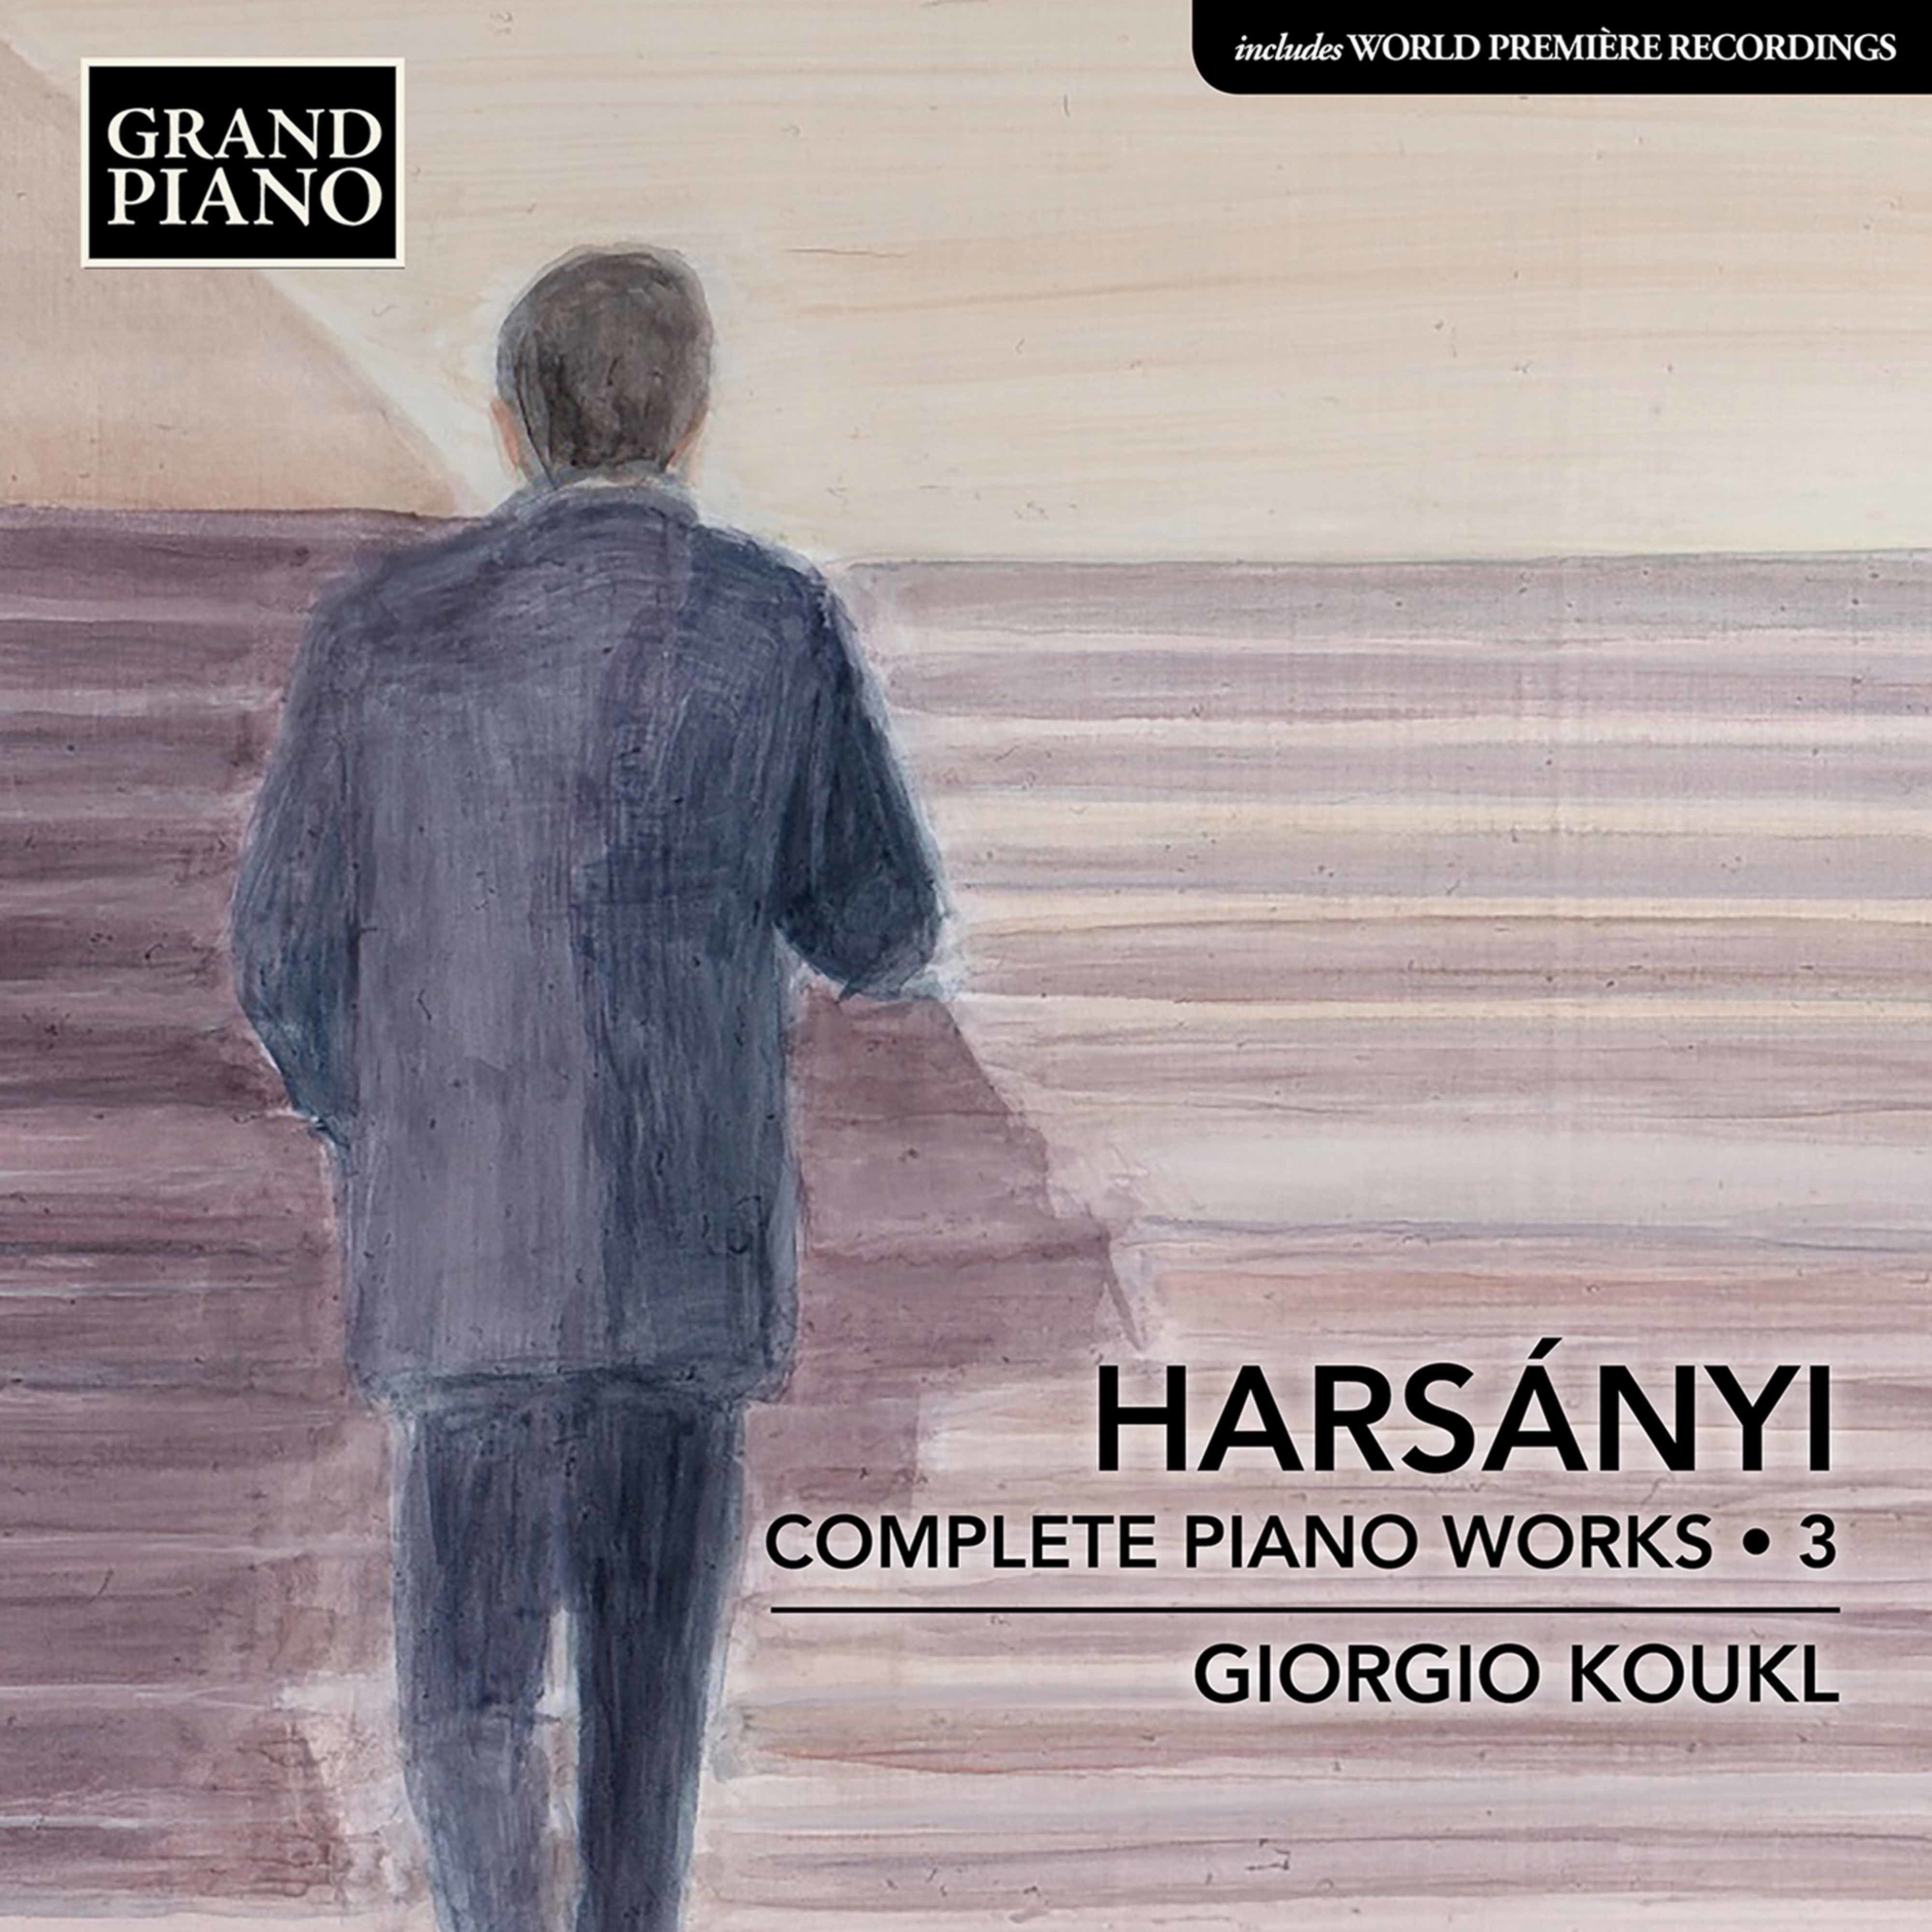 Giorgio Koukl - Harsanyi: Complete Piano Works, Vol. 3 (2021) [FLAC 24bit/96kHz]